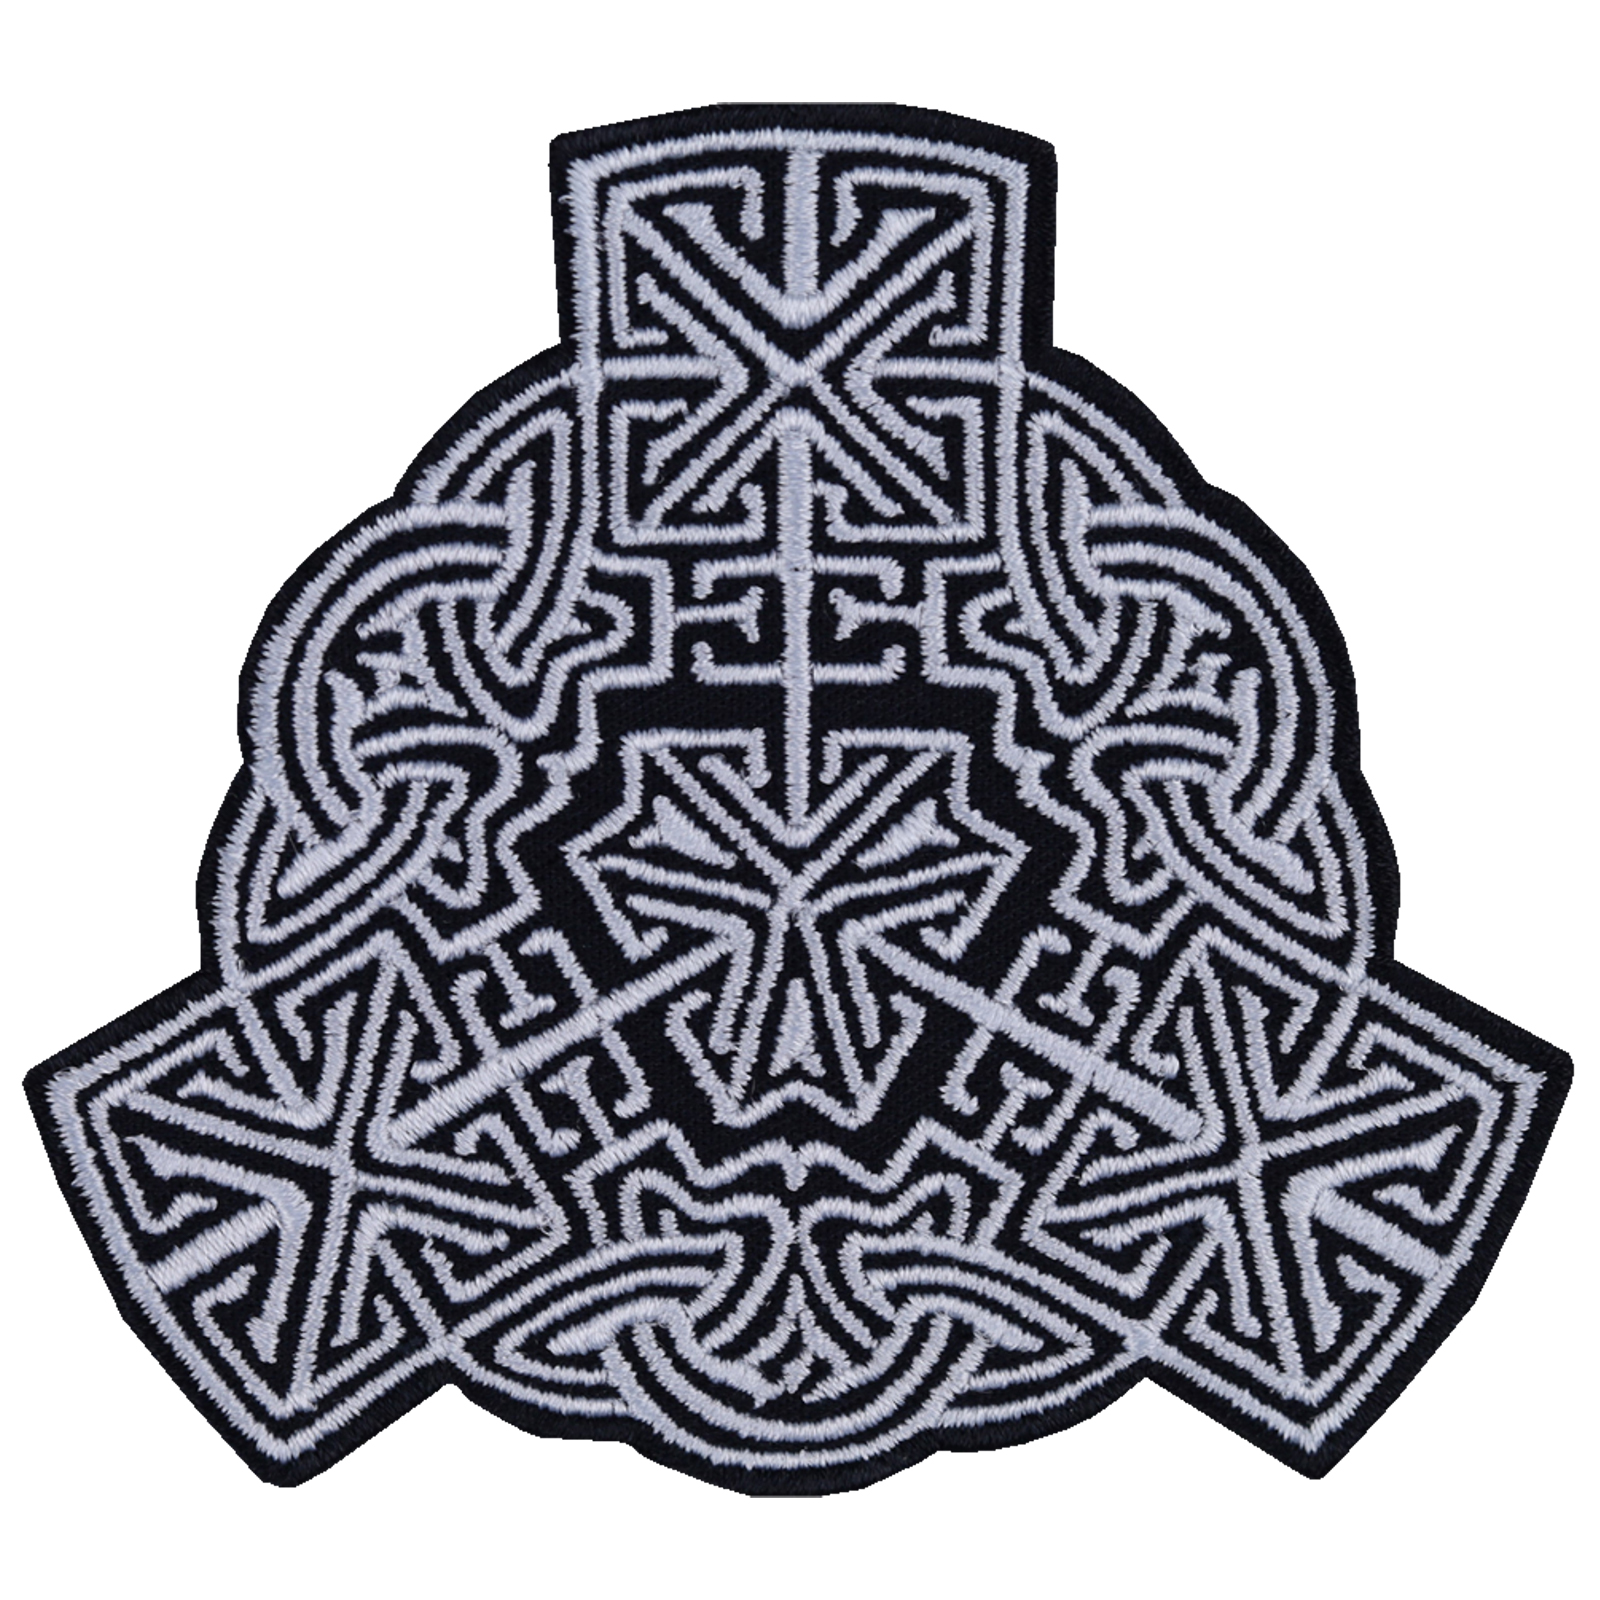 Keltischer Knoten Trinity - Patch